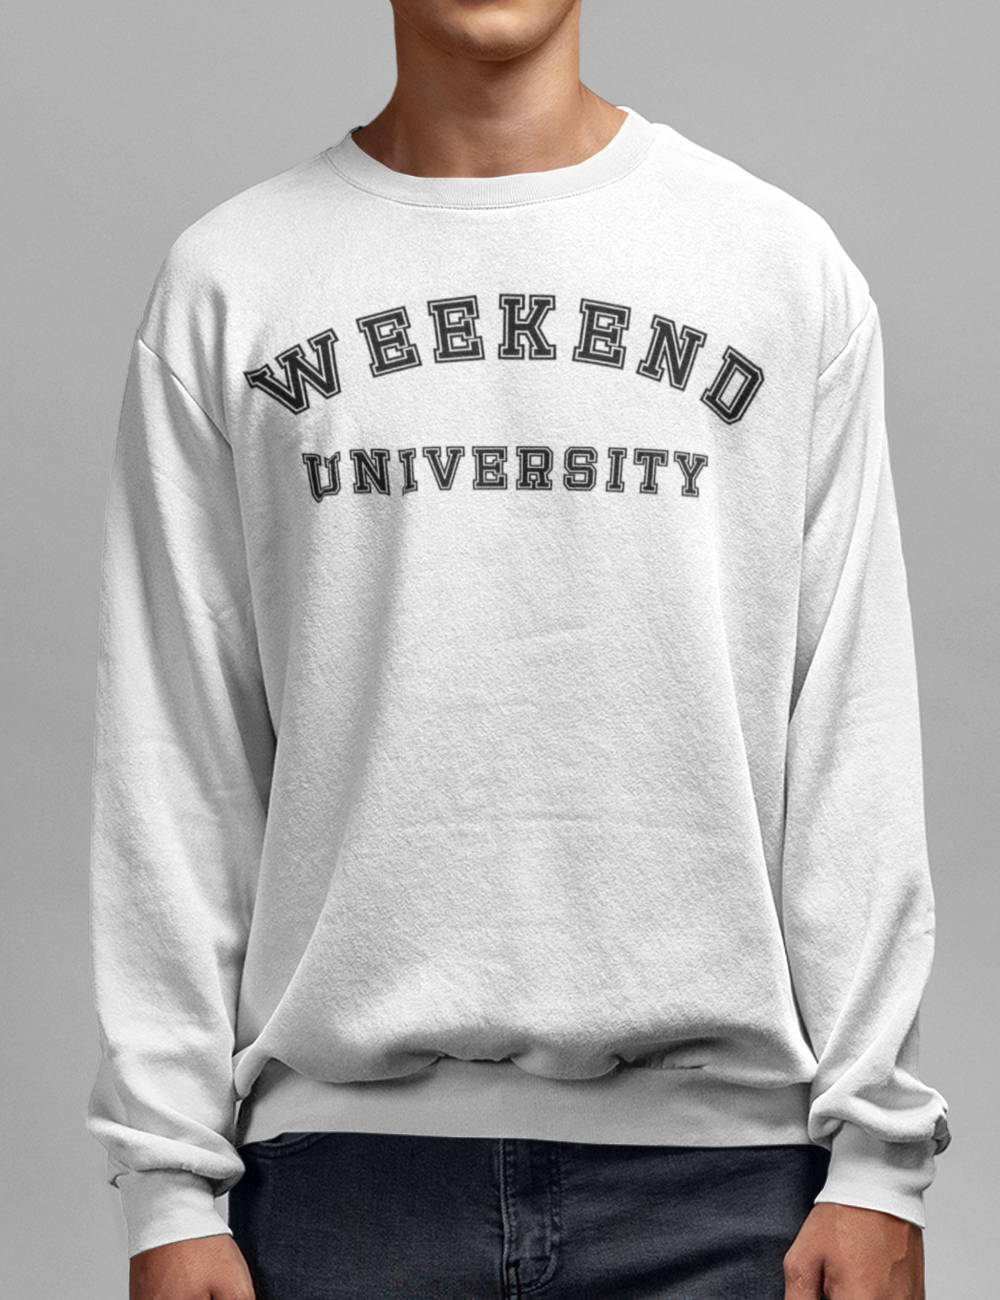 Weekend University Crewneck Sweatshirt OniTakai